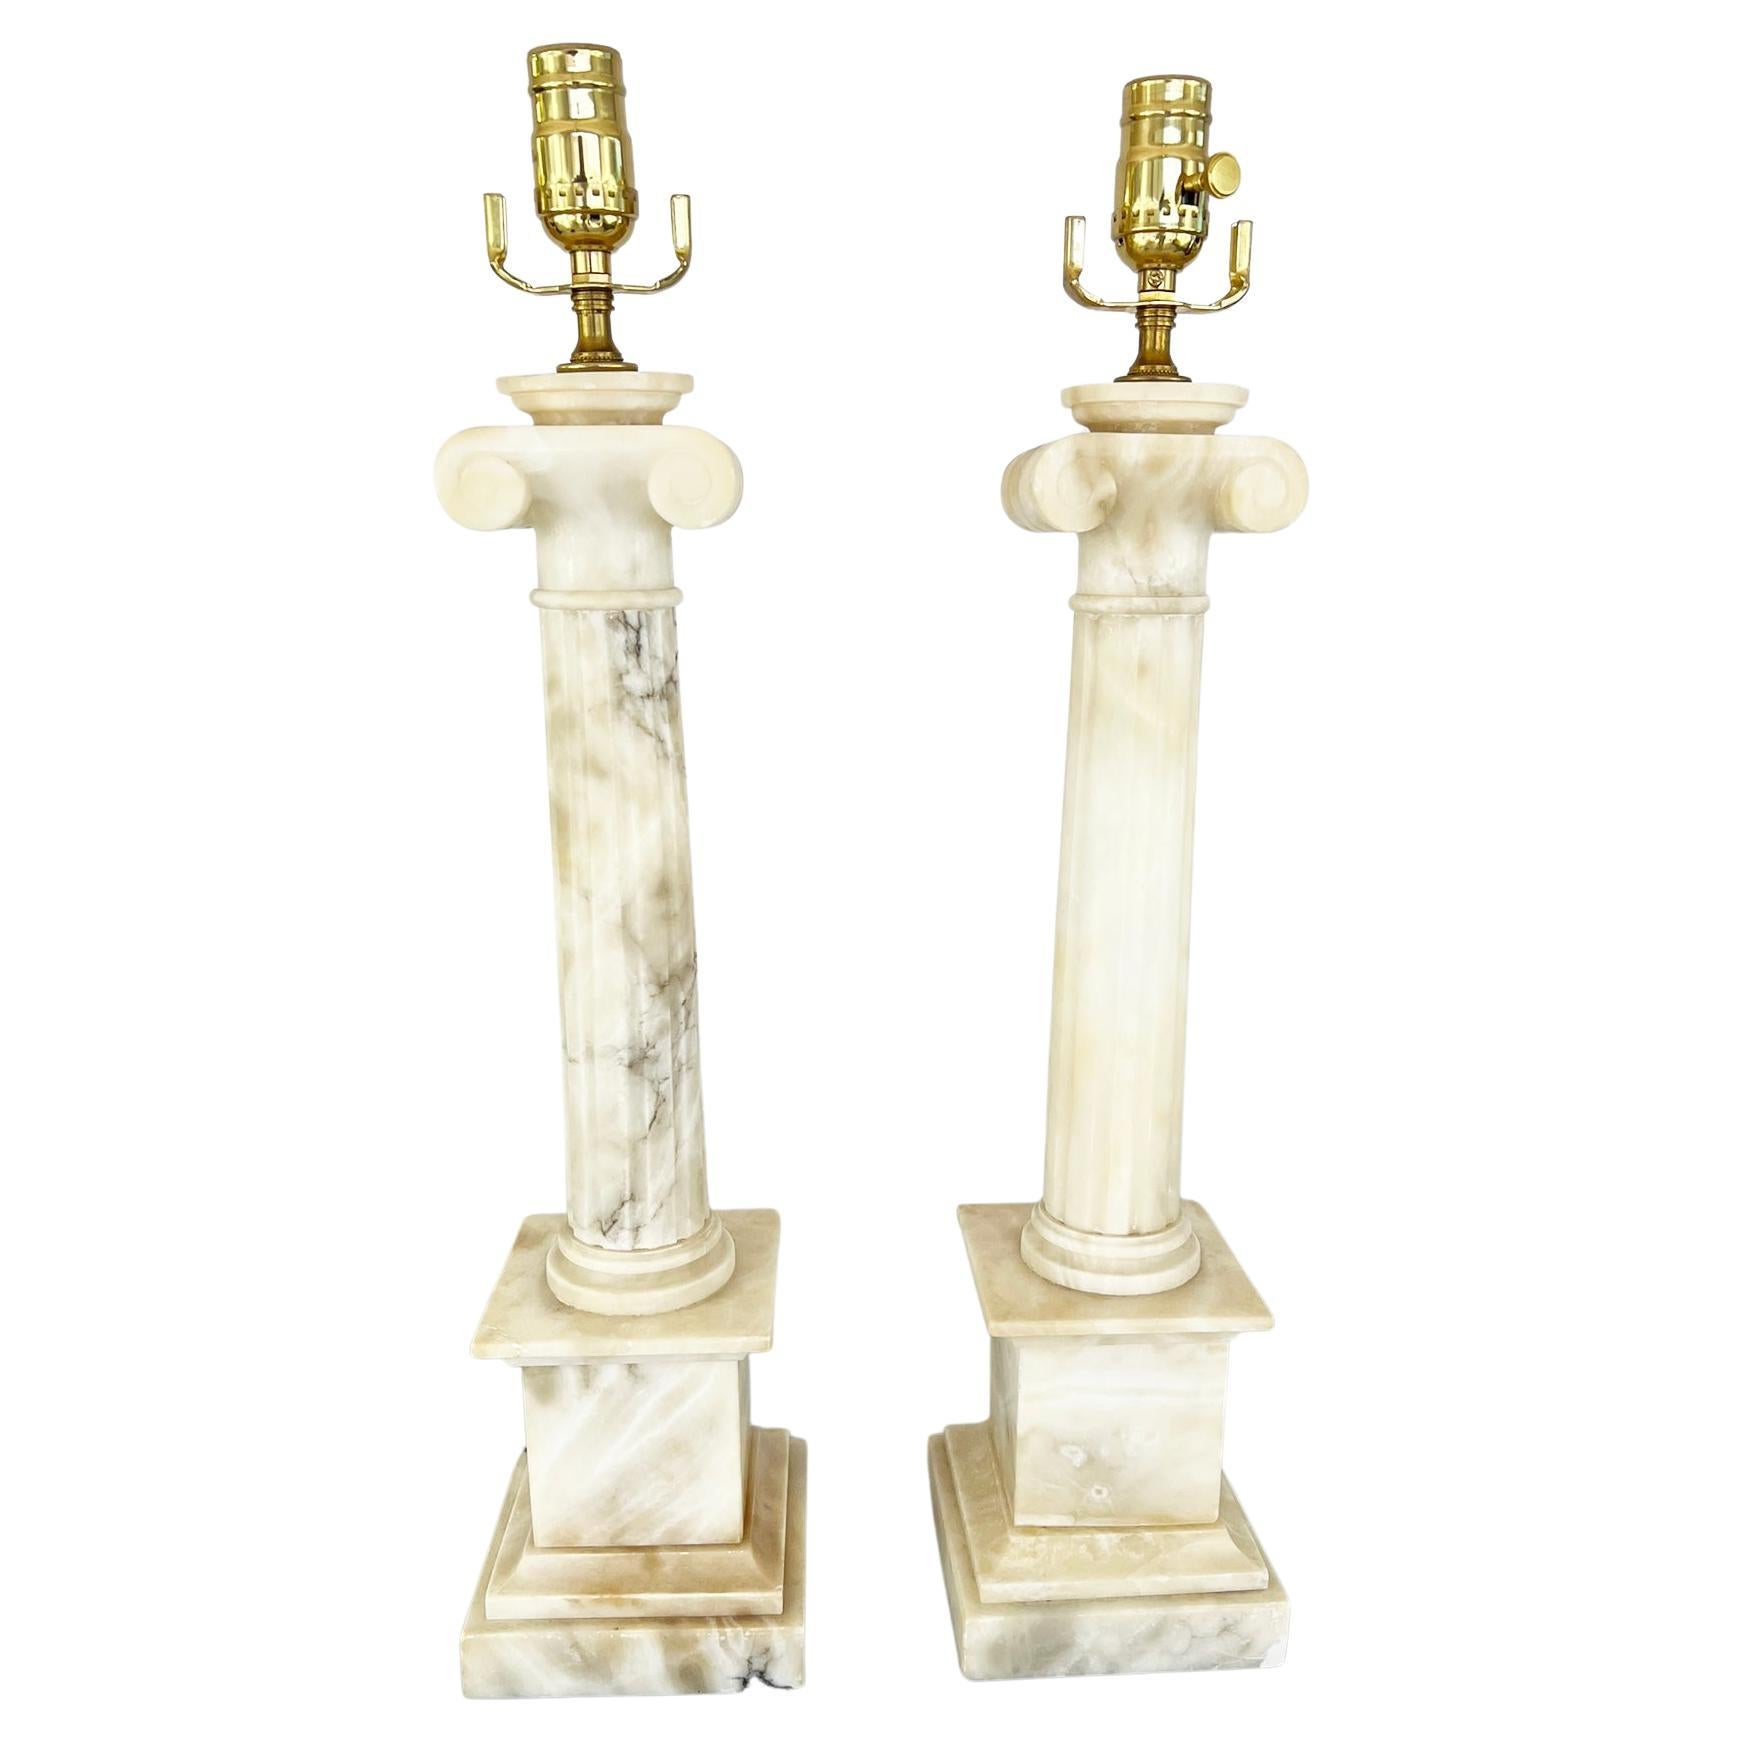 Paire de lampes colonnaires en albâtre sculpté avec chapiteaux ioniques